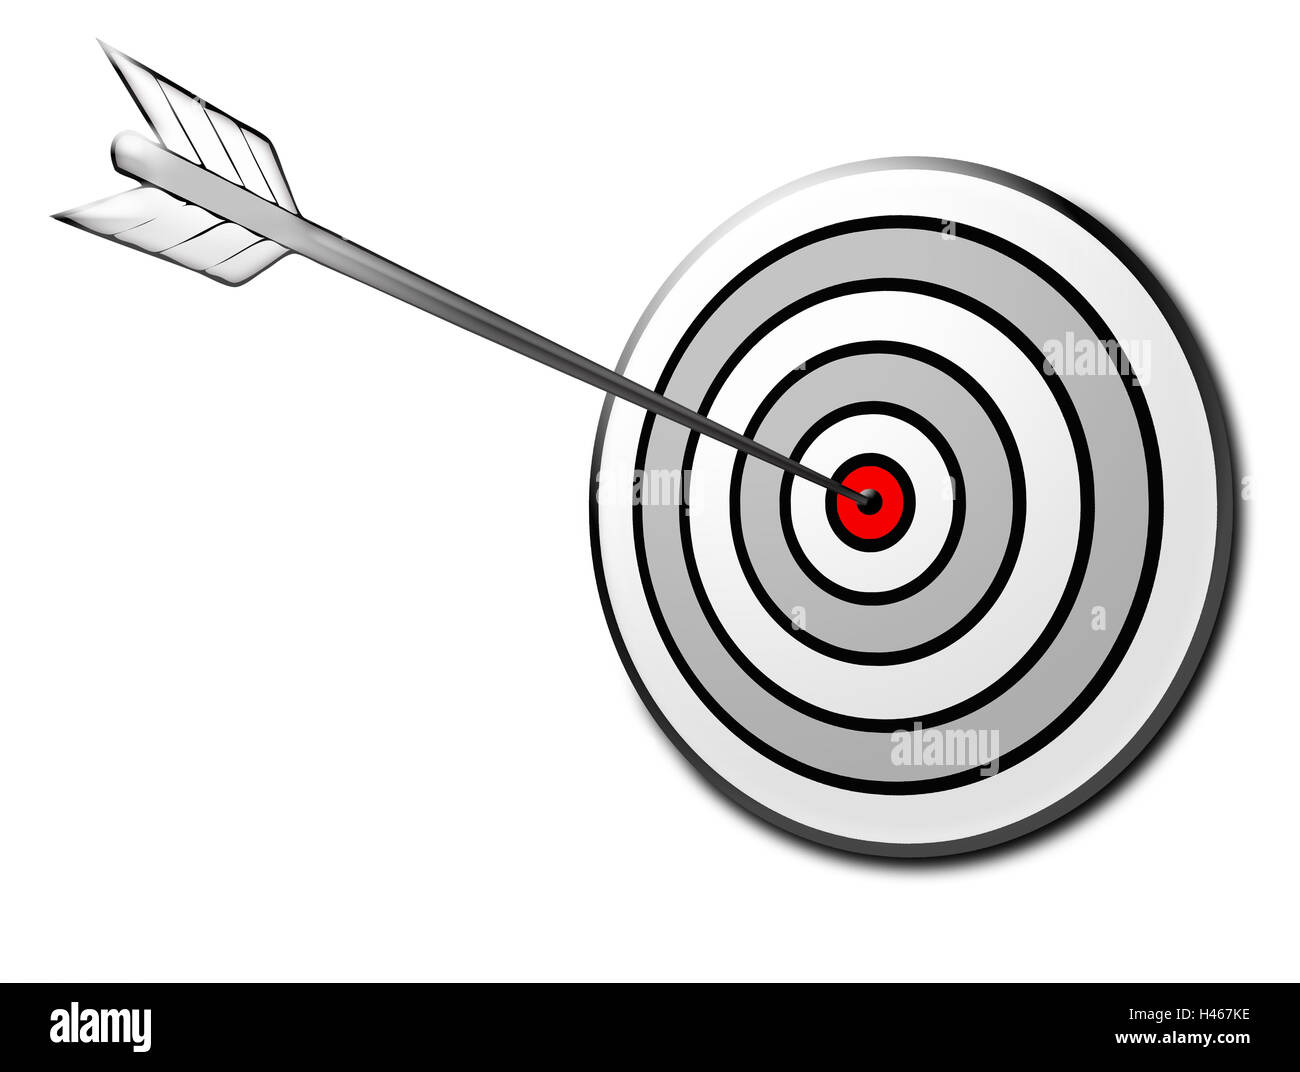 Arrow, target, graphics, center, goal, Stock Photo